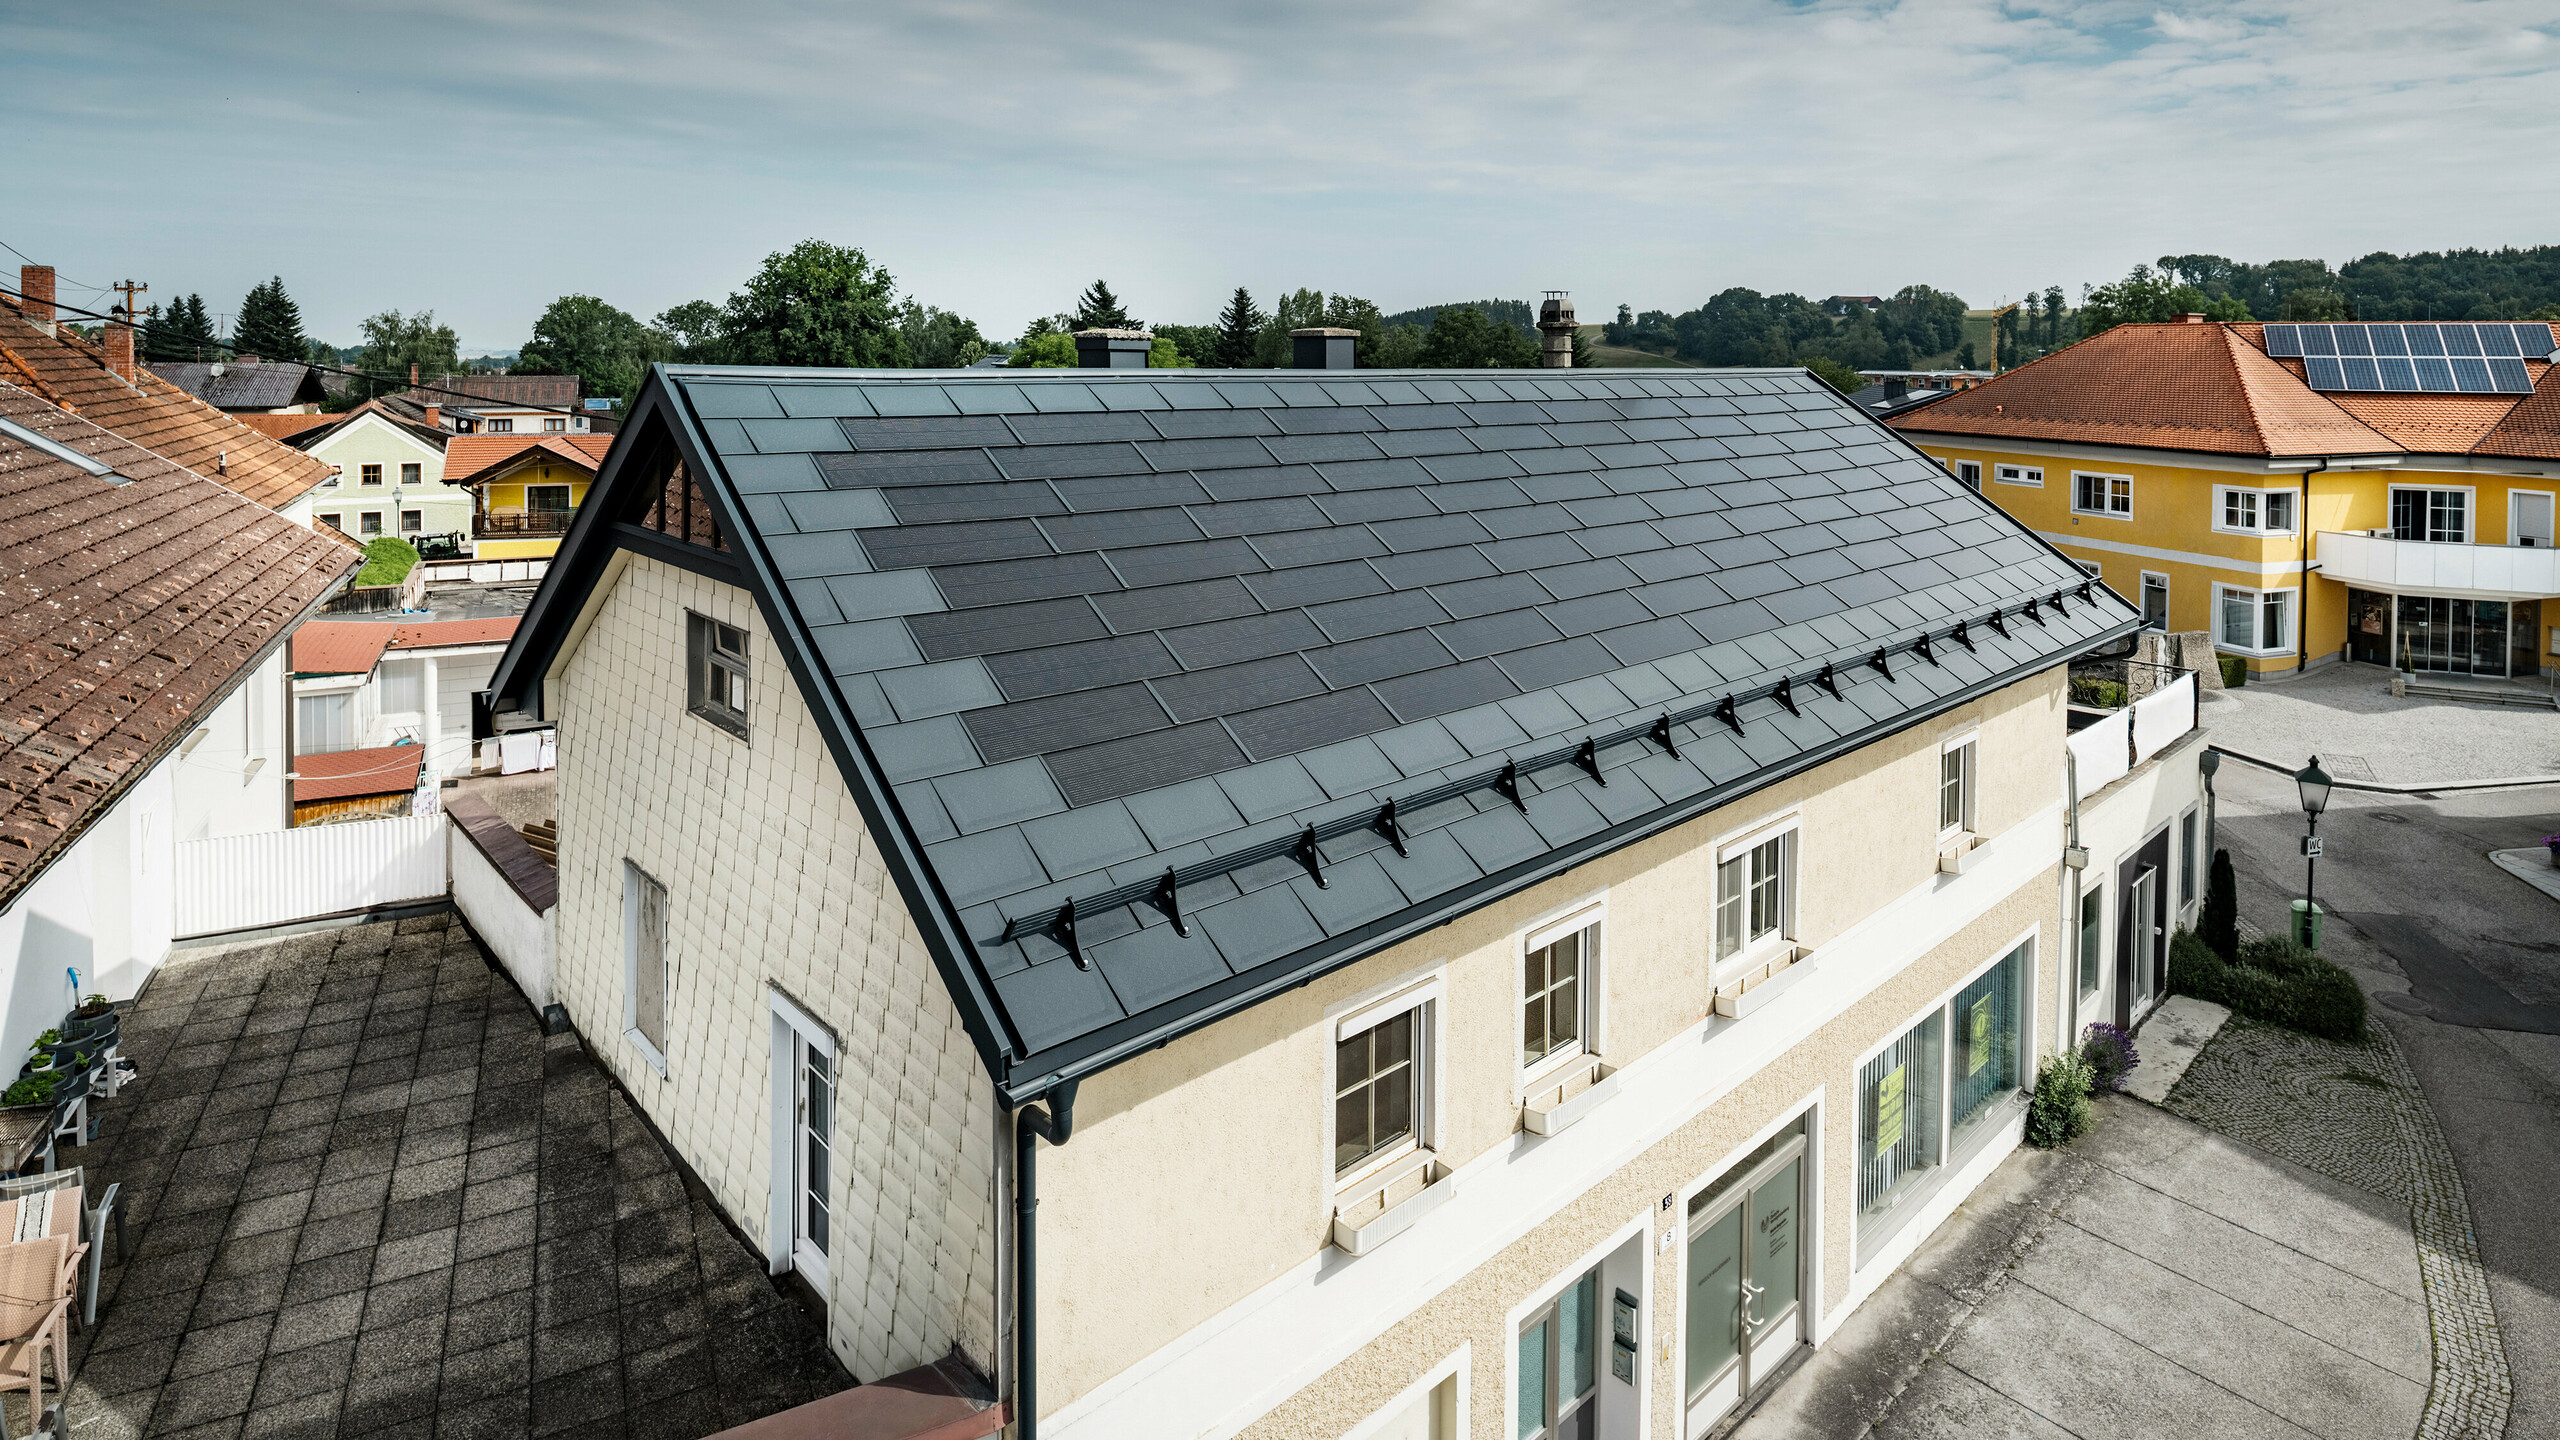 Pogled od zgoraj na enodružinsko hišo v Mettmachu v Avstriji. Starejši objekt je bil prenovljen s PREFA solarnimi strešnimi ploščami v antracitni barvi. Sistemi za zaščito pred snegom in jasne linije solarnih strešnih plošč poudarjajo čisto izdelavo aluminijastih izdelkov PREFA. V ozadju je v kontrastu s streho sosednje stavbe, ki je obarvana oranžno. Fotonapetostni moduli so nameščeni na strehi sosednje enodružinske hiše v klasični strešni rešitvi, kar nakazuje na pestrost energijsko učinkovite izvedbe streh.